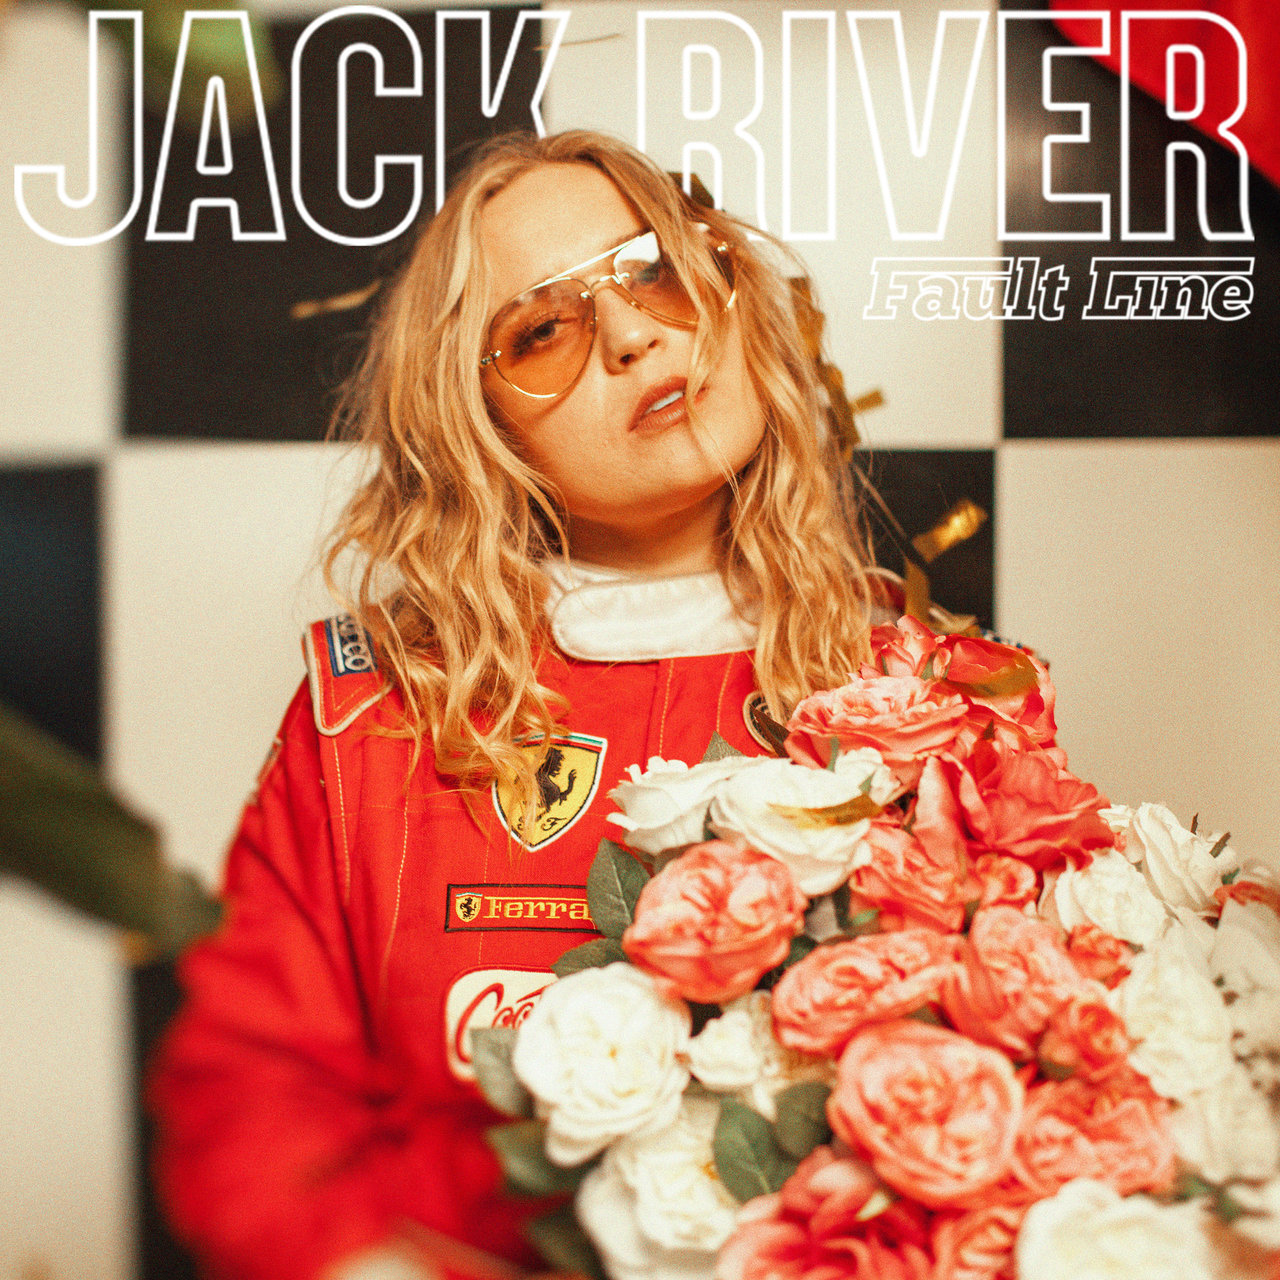 Jack River — Fault Line cover artwork